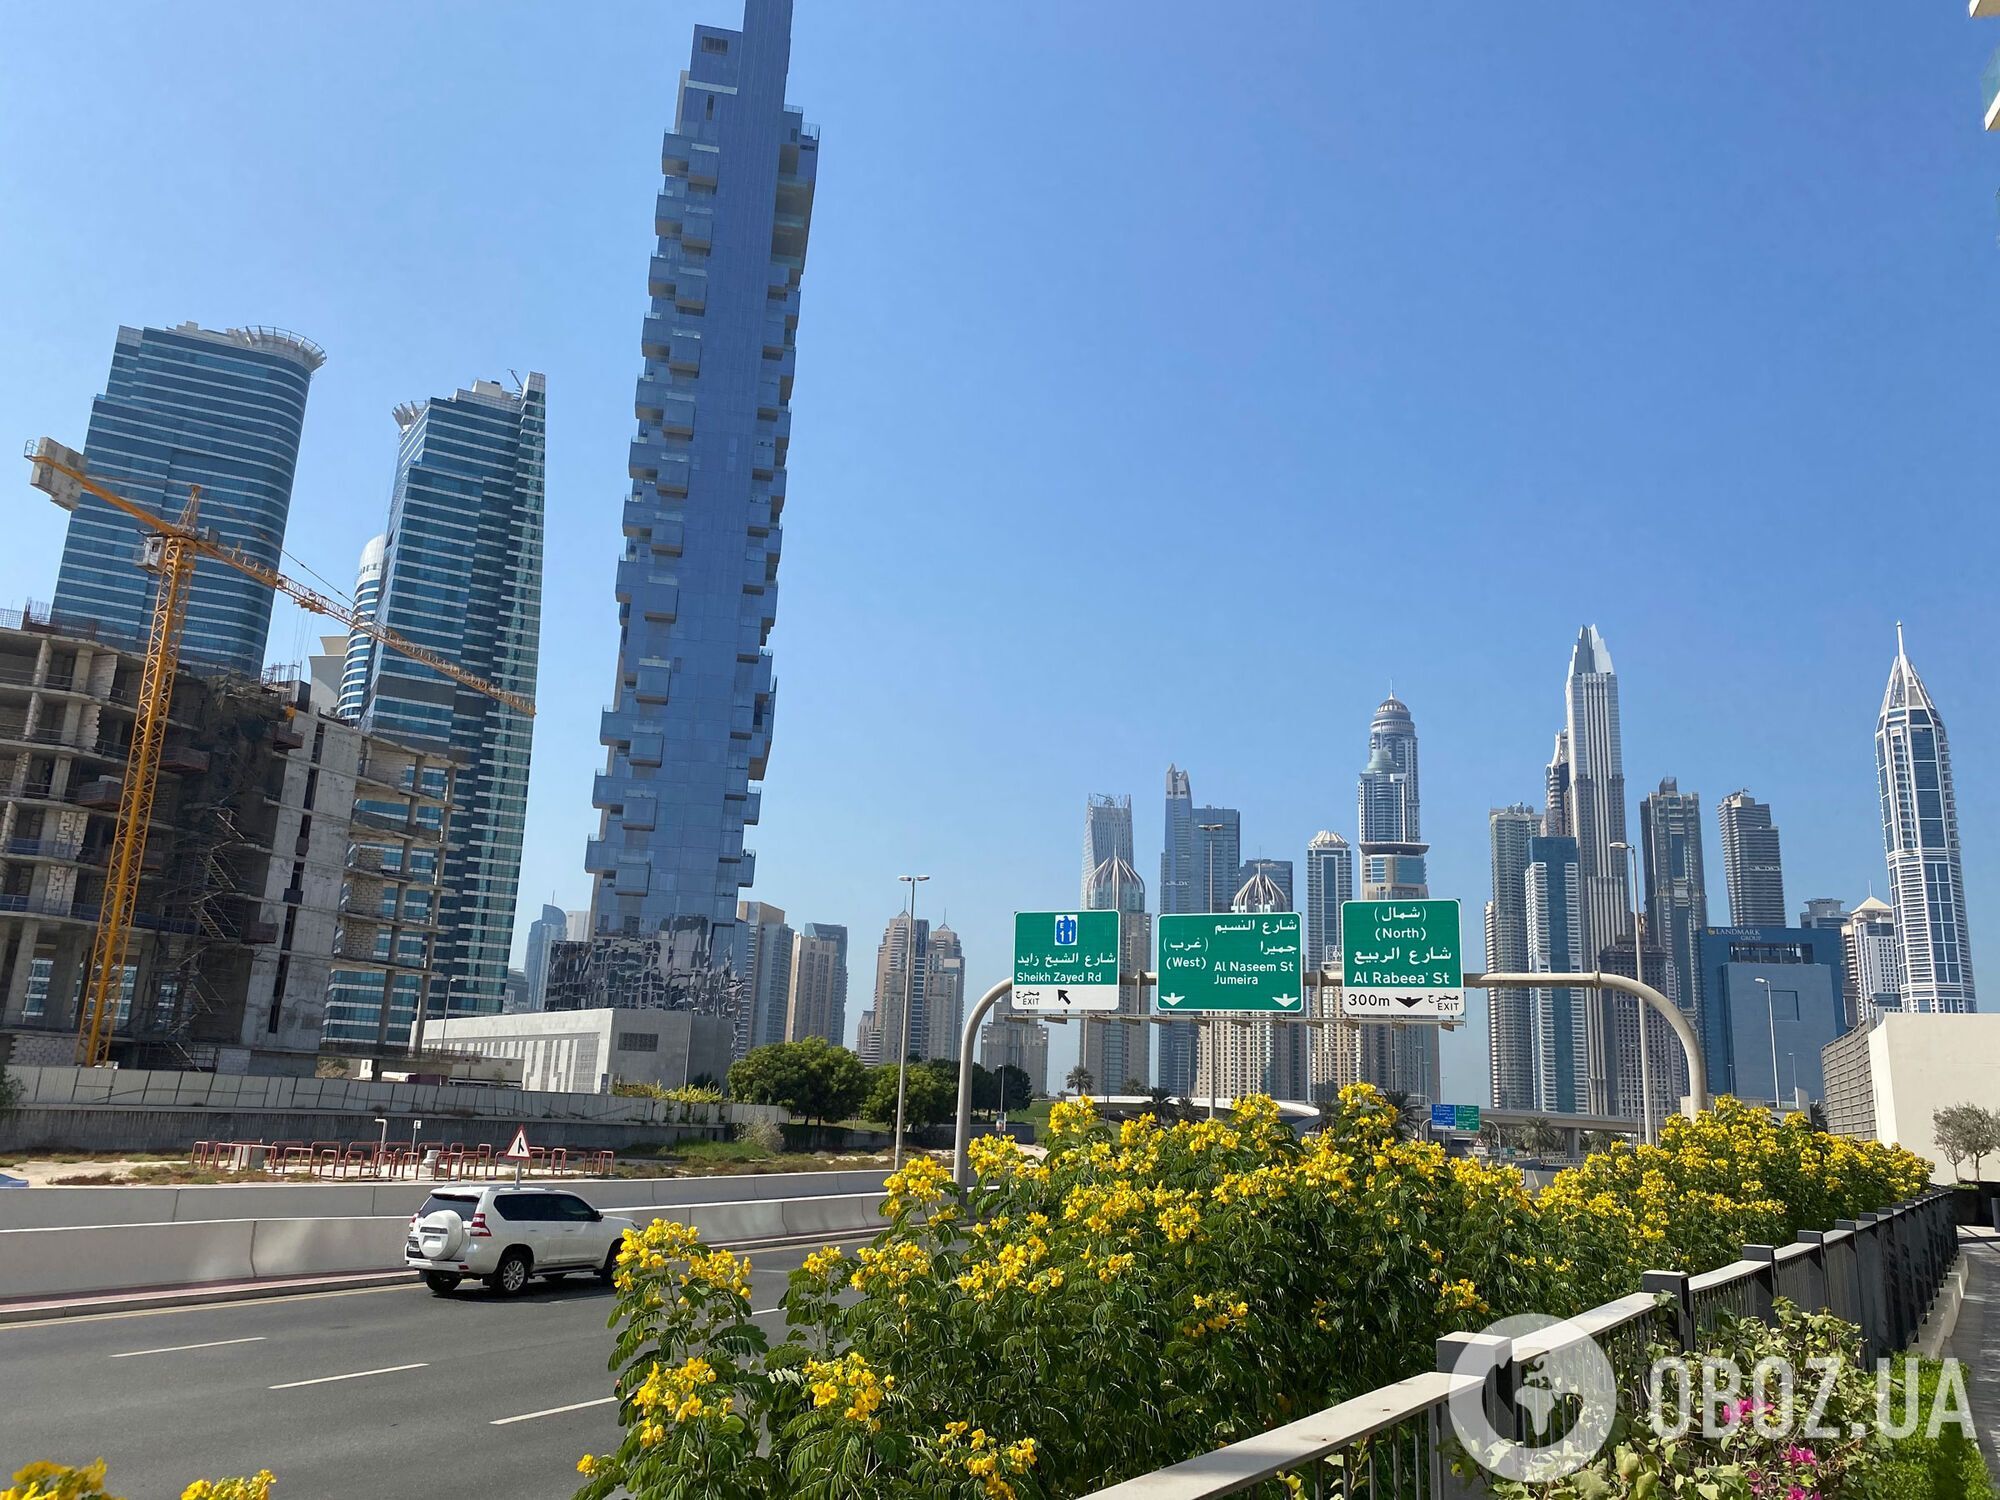 Дубай: ви ще можете встигнути відпочити